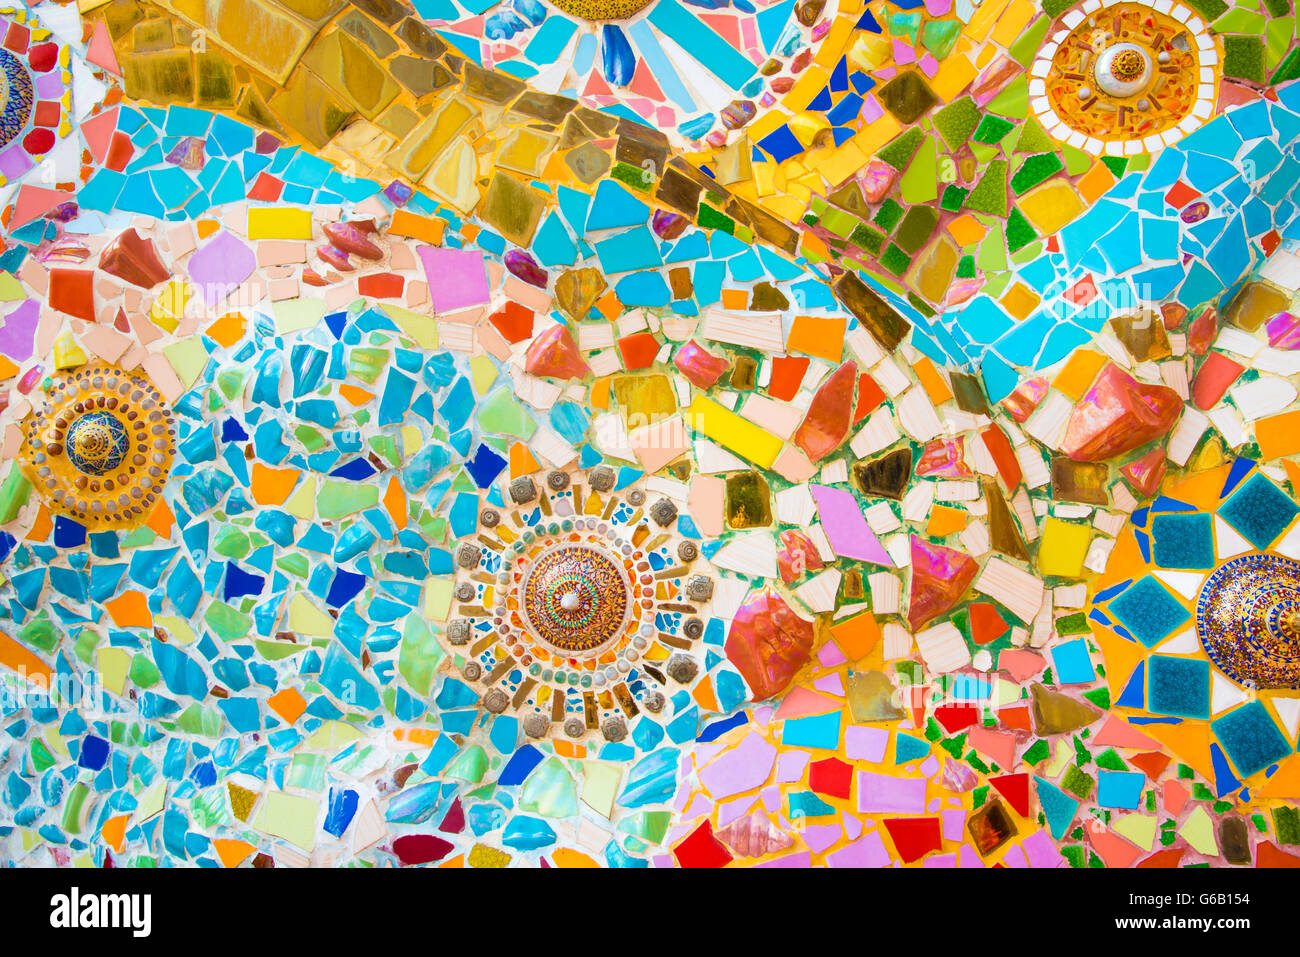 L'Art de la céramique, carreaux de mosaïque colorée et mur. Banque D'Images